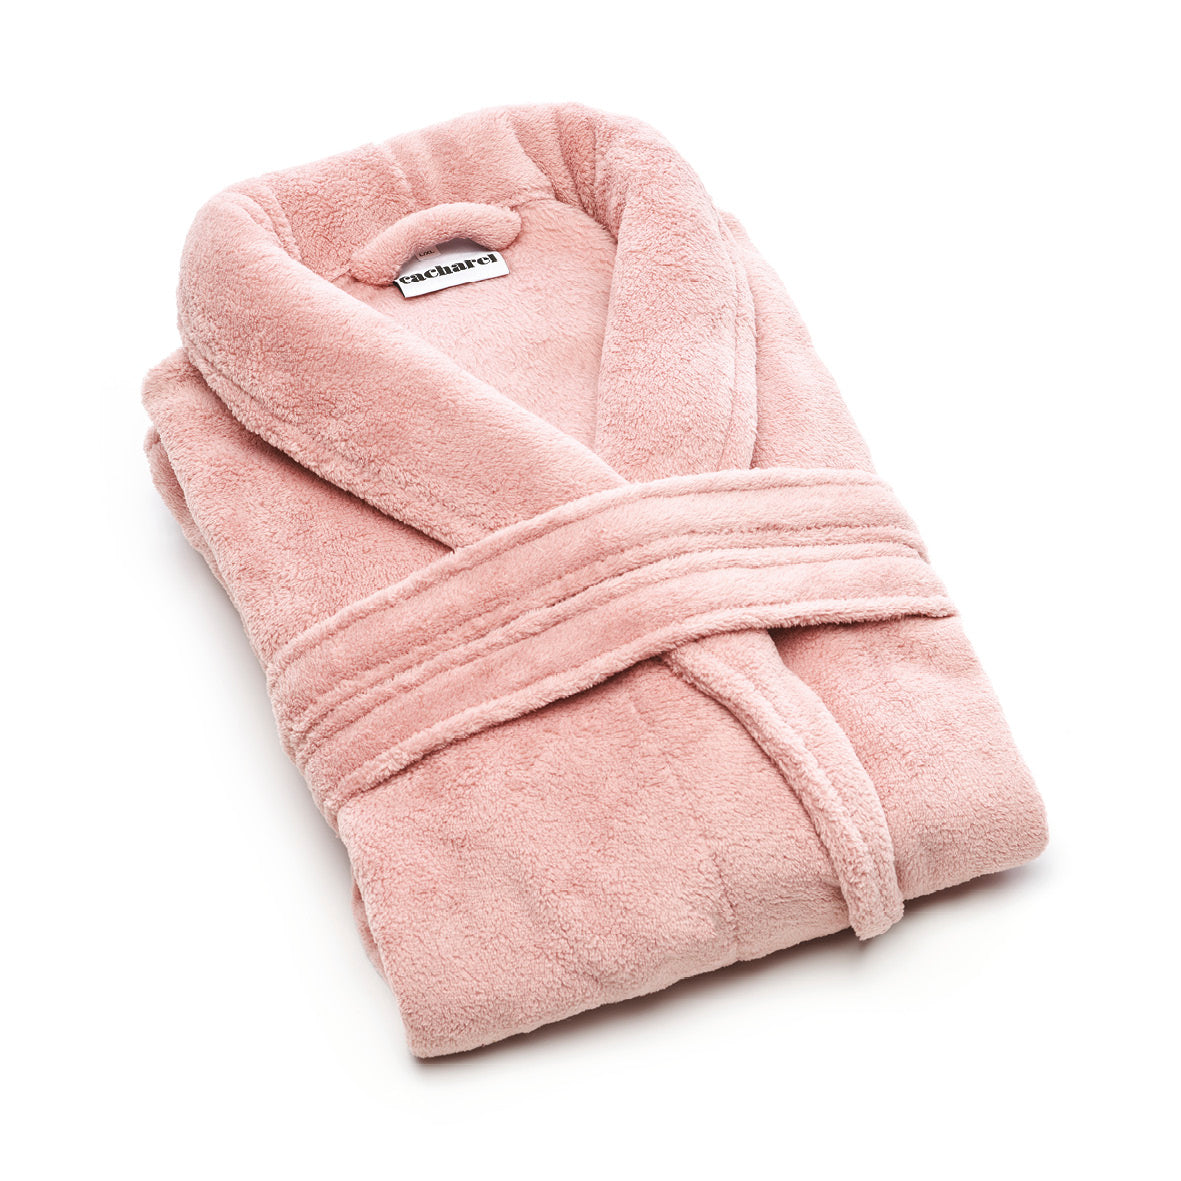 Robe de chambre en fleece - rose clair - VipShopBoutic